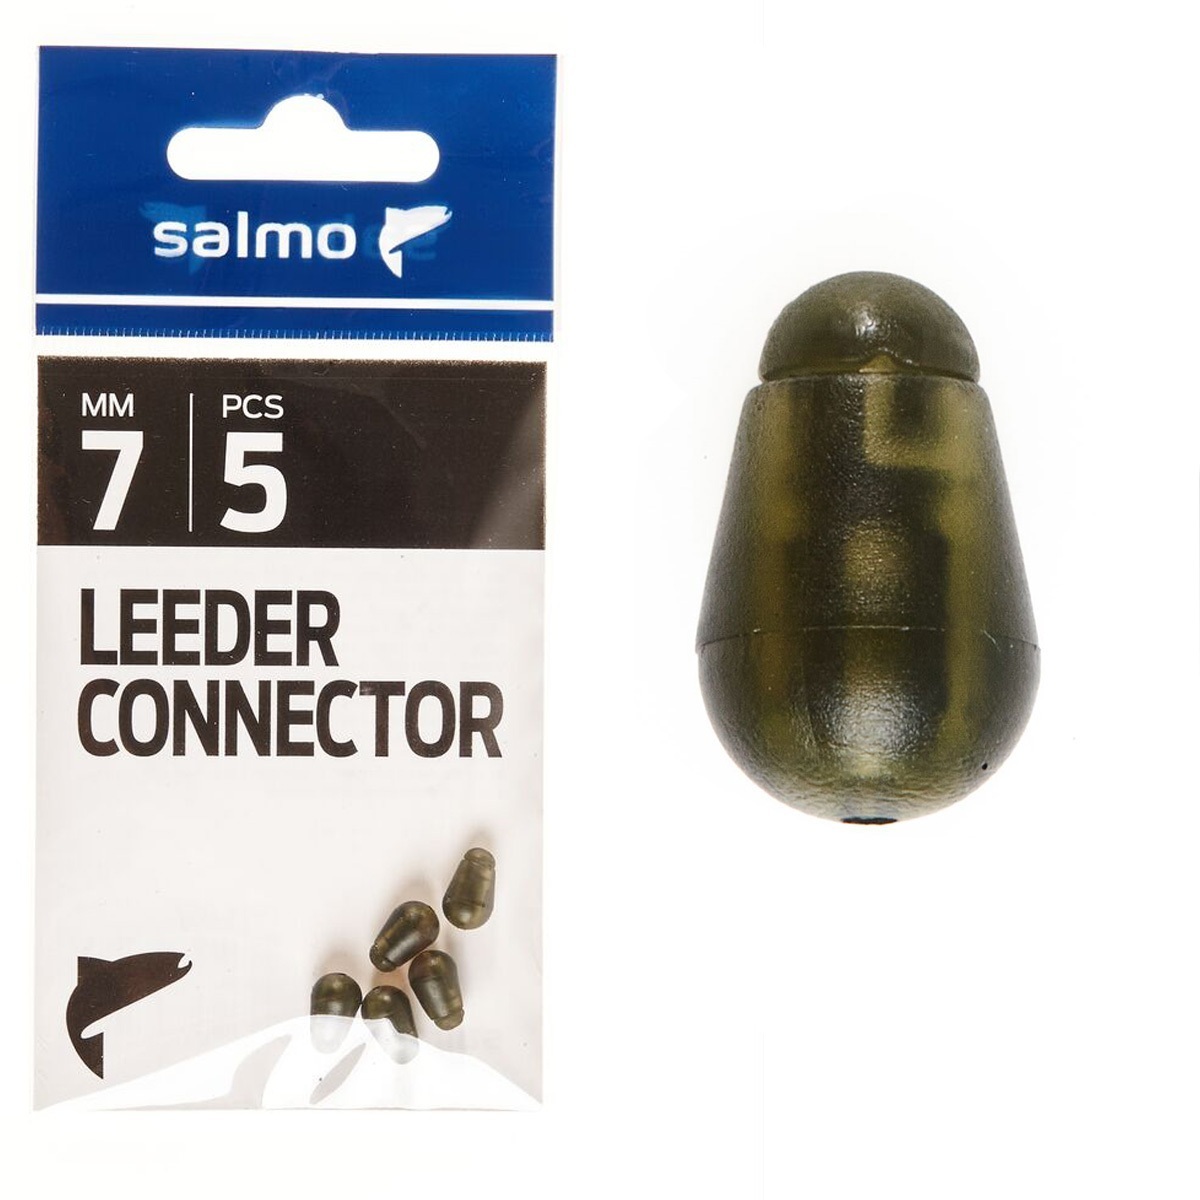 Фидерный коннектор для поводка 7 мм Salmo (Салмо) - Quick Change Bead, 5 шт